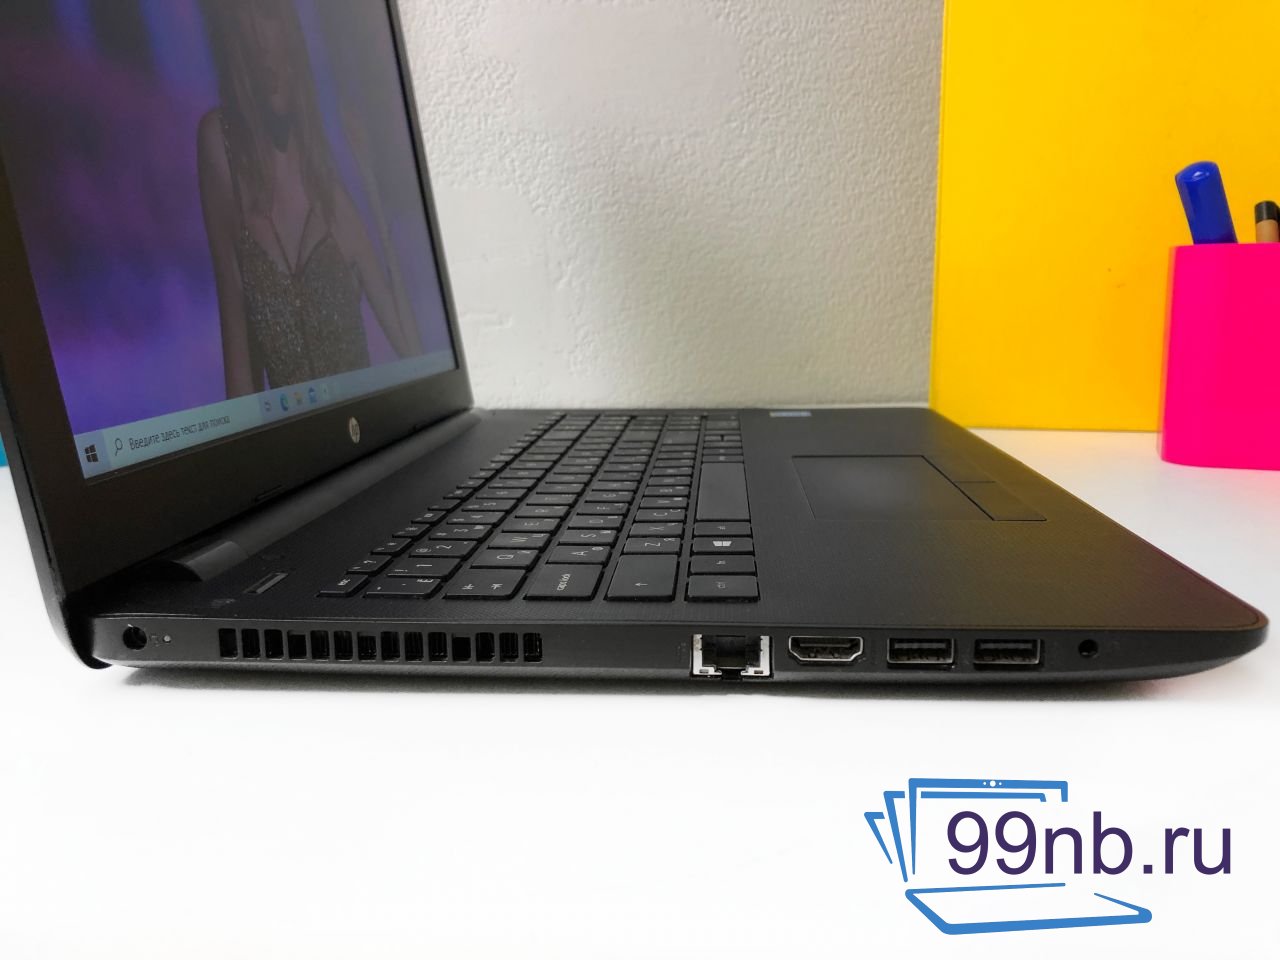  Ноутбук HP Pavilion для учебы Intel + 128 Gb SSD